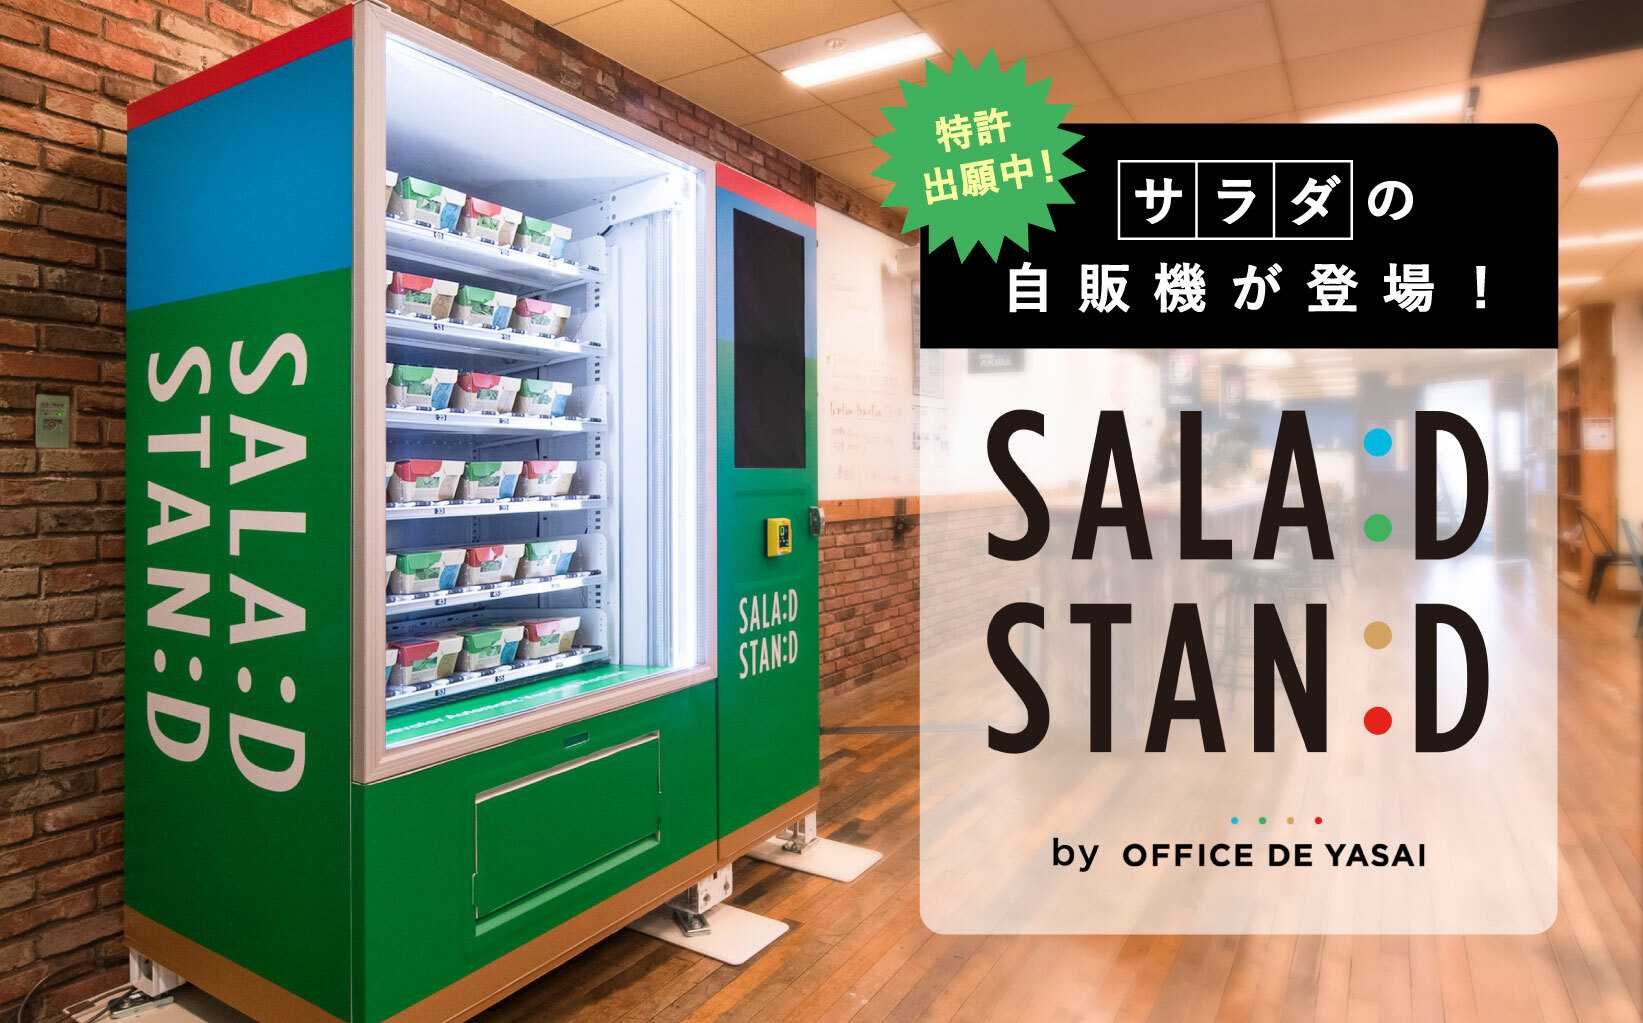 京王井の頭線 渋谷駅に次世代型「サラダ自販機」が登場─AIカメラでフードロス削減